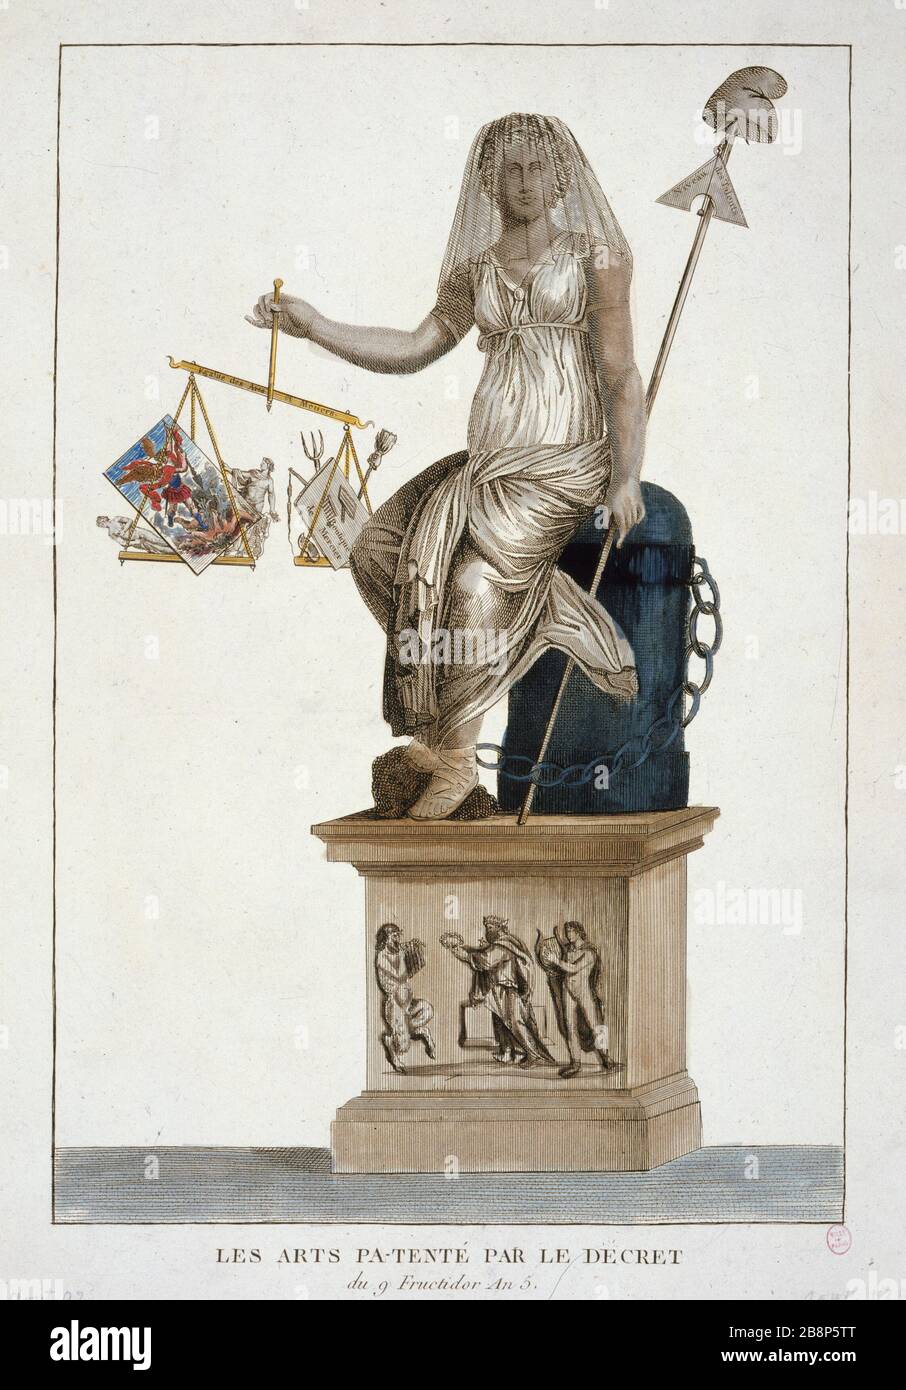 TENTE PA ARTS PAR DÉCRET DU 9 FRUCTIDOR AN 5 'les Arts pa-tenté par le dépôt du 9 Fructidor an 5 (26 août 1797)'. Paris, musée Carnavalet. Banque D'Images